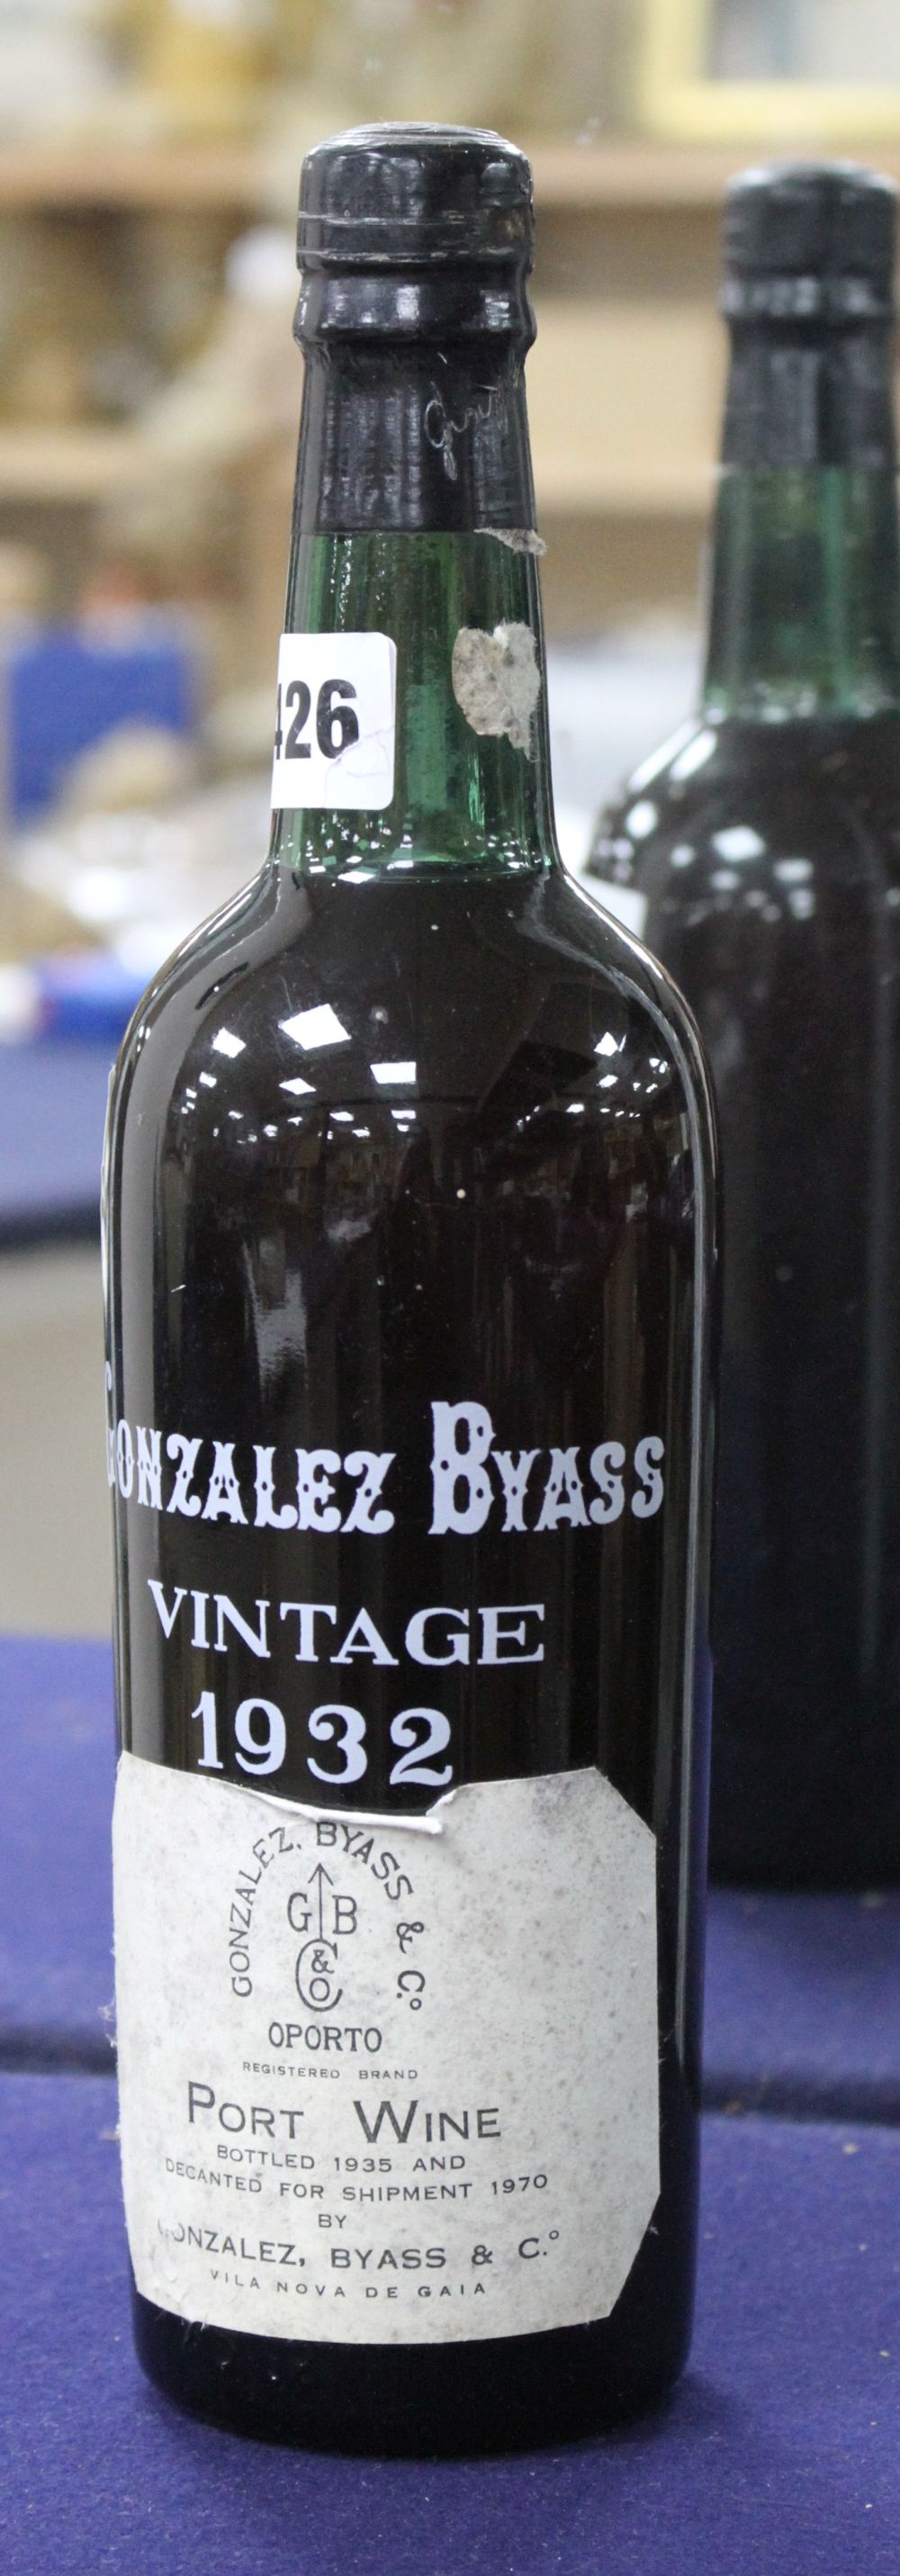 A bottle of Gonzalez Byass Port, 1932